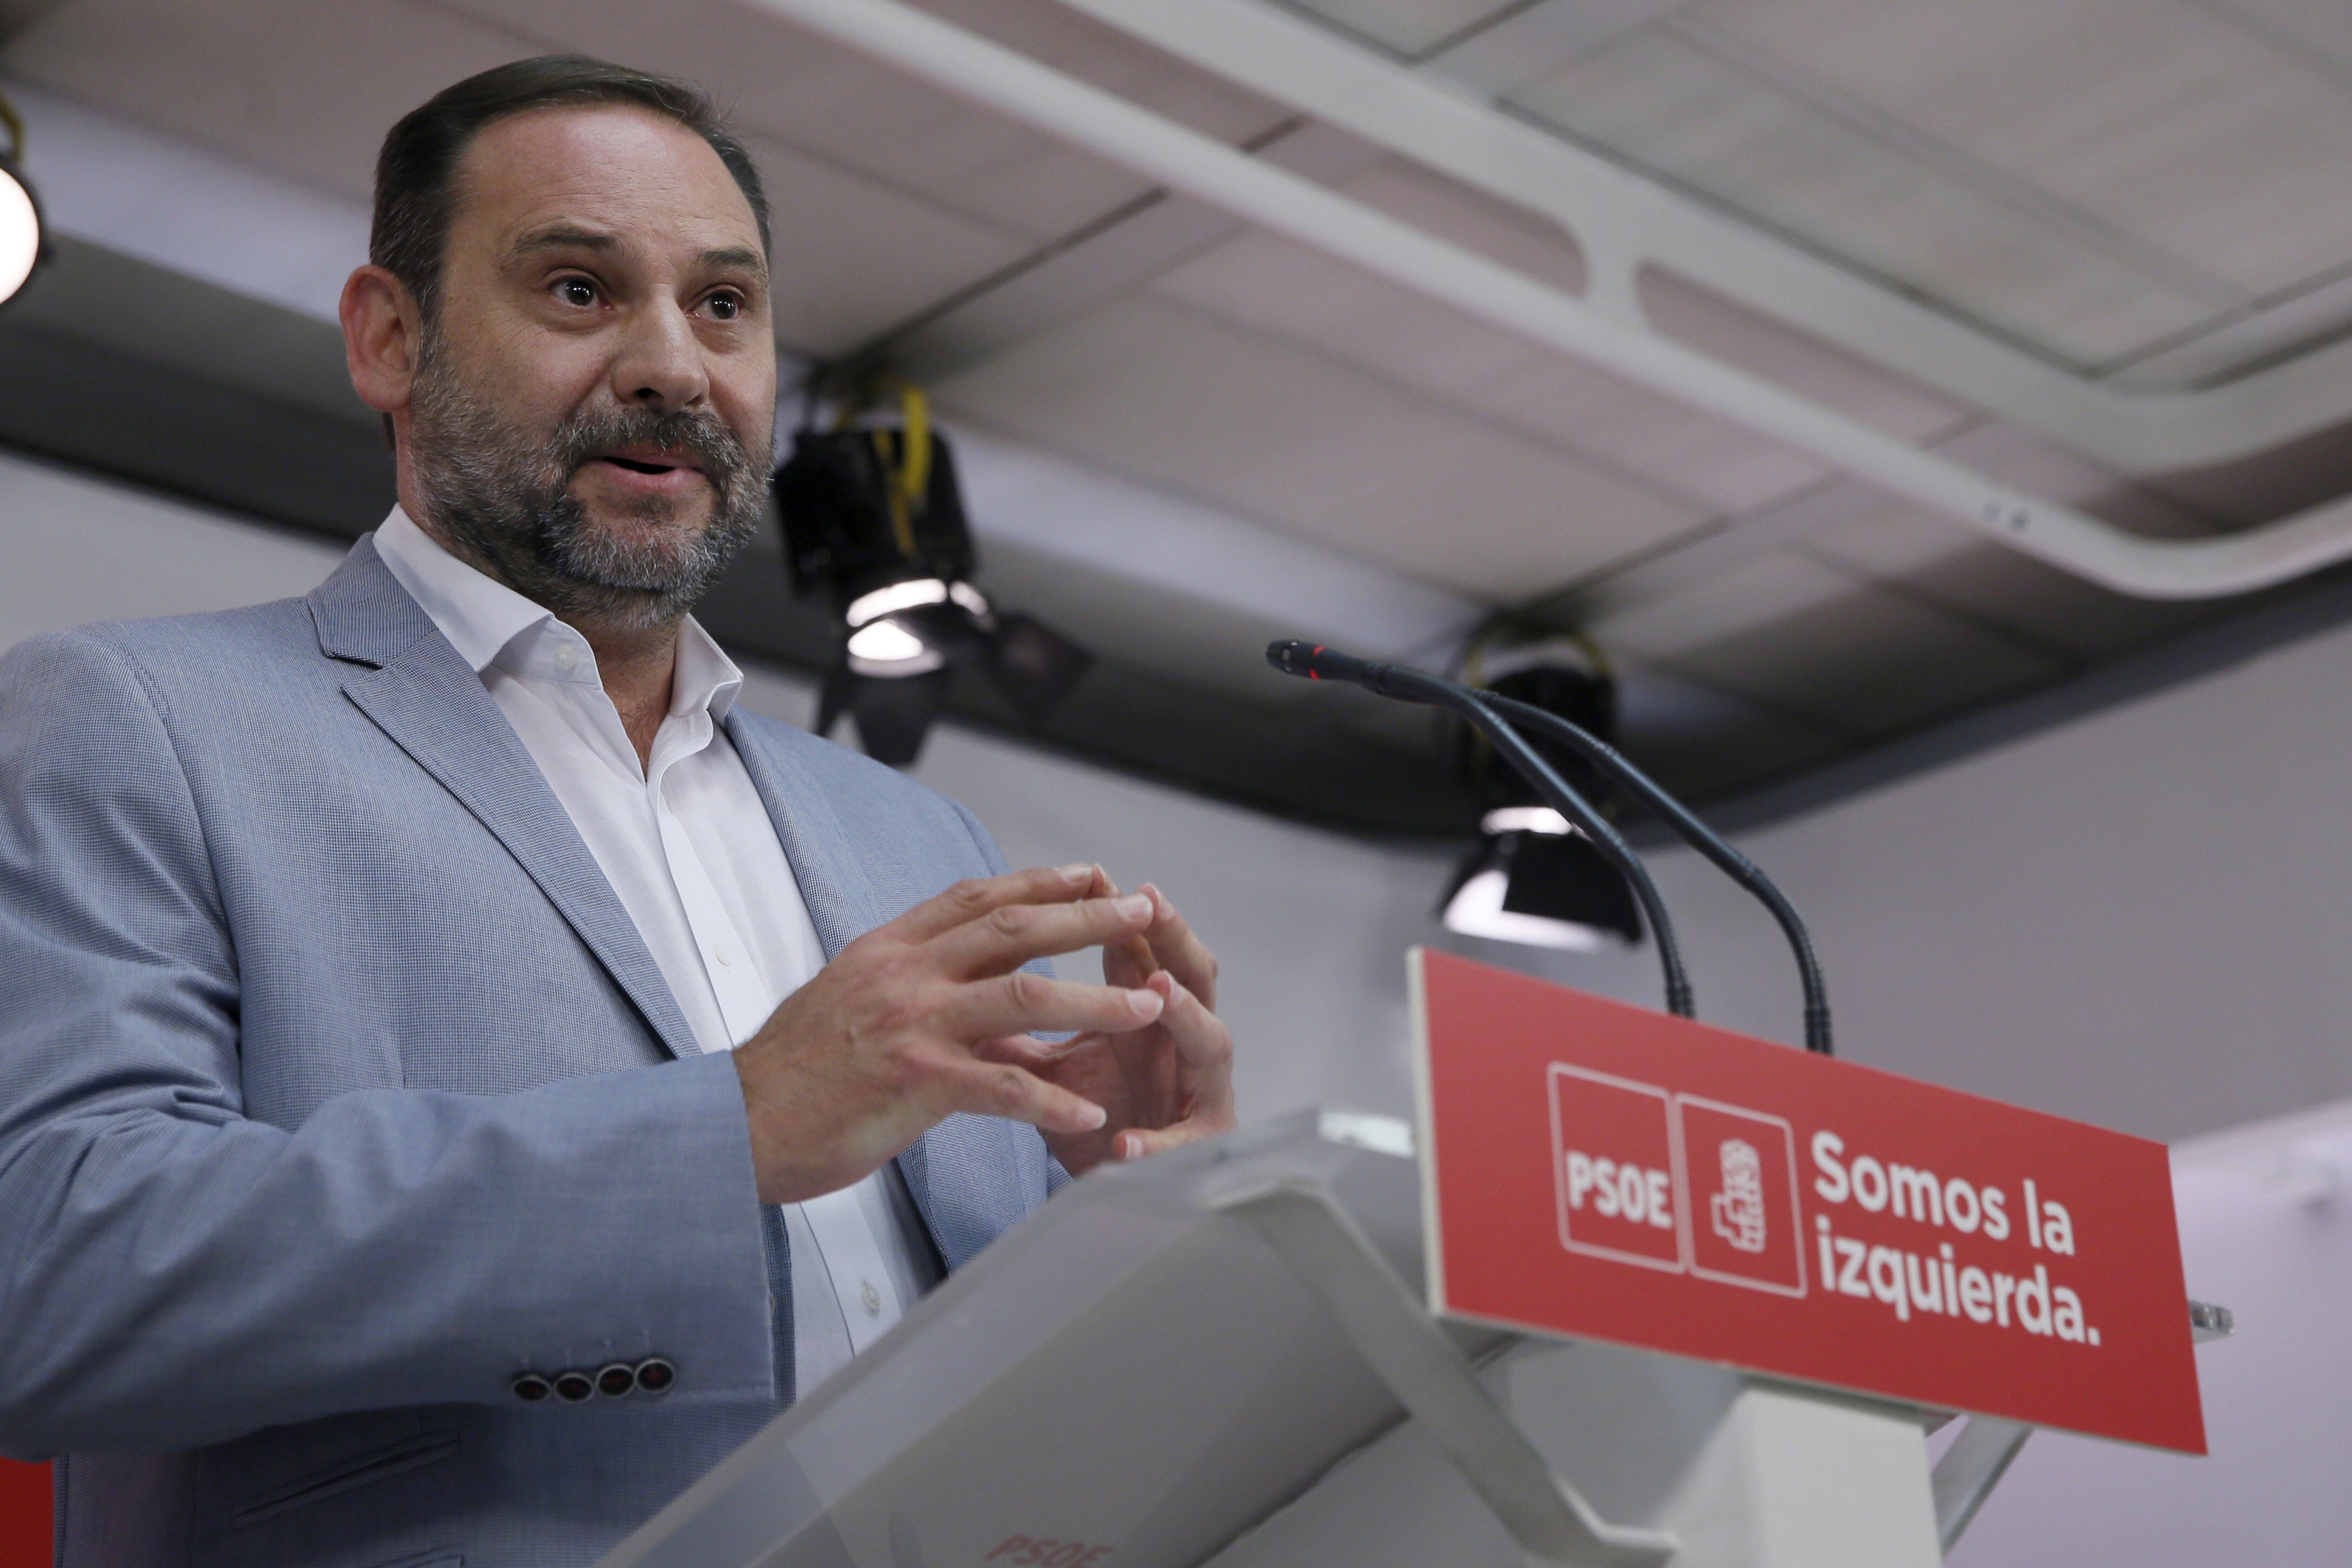 Vídeo: El secretari d'Organització del PSOE no sap el nom del PSC